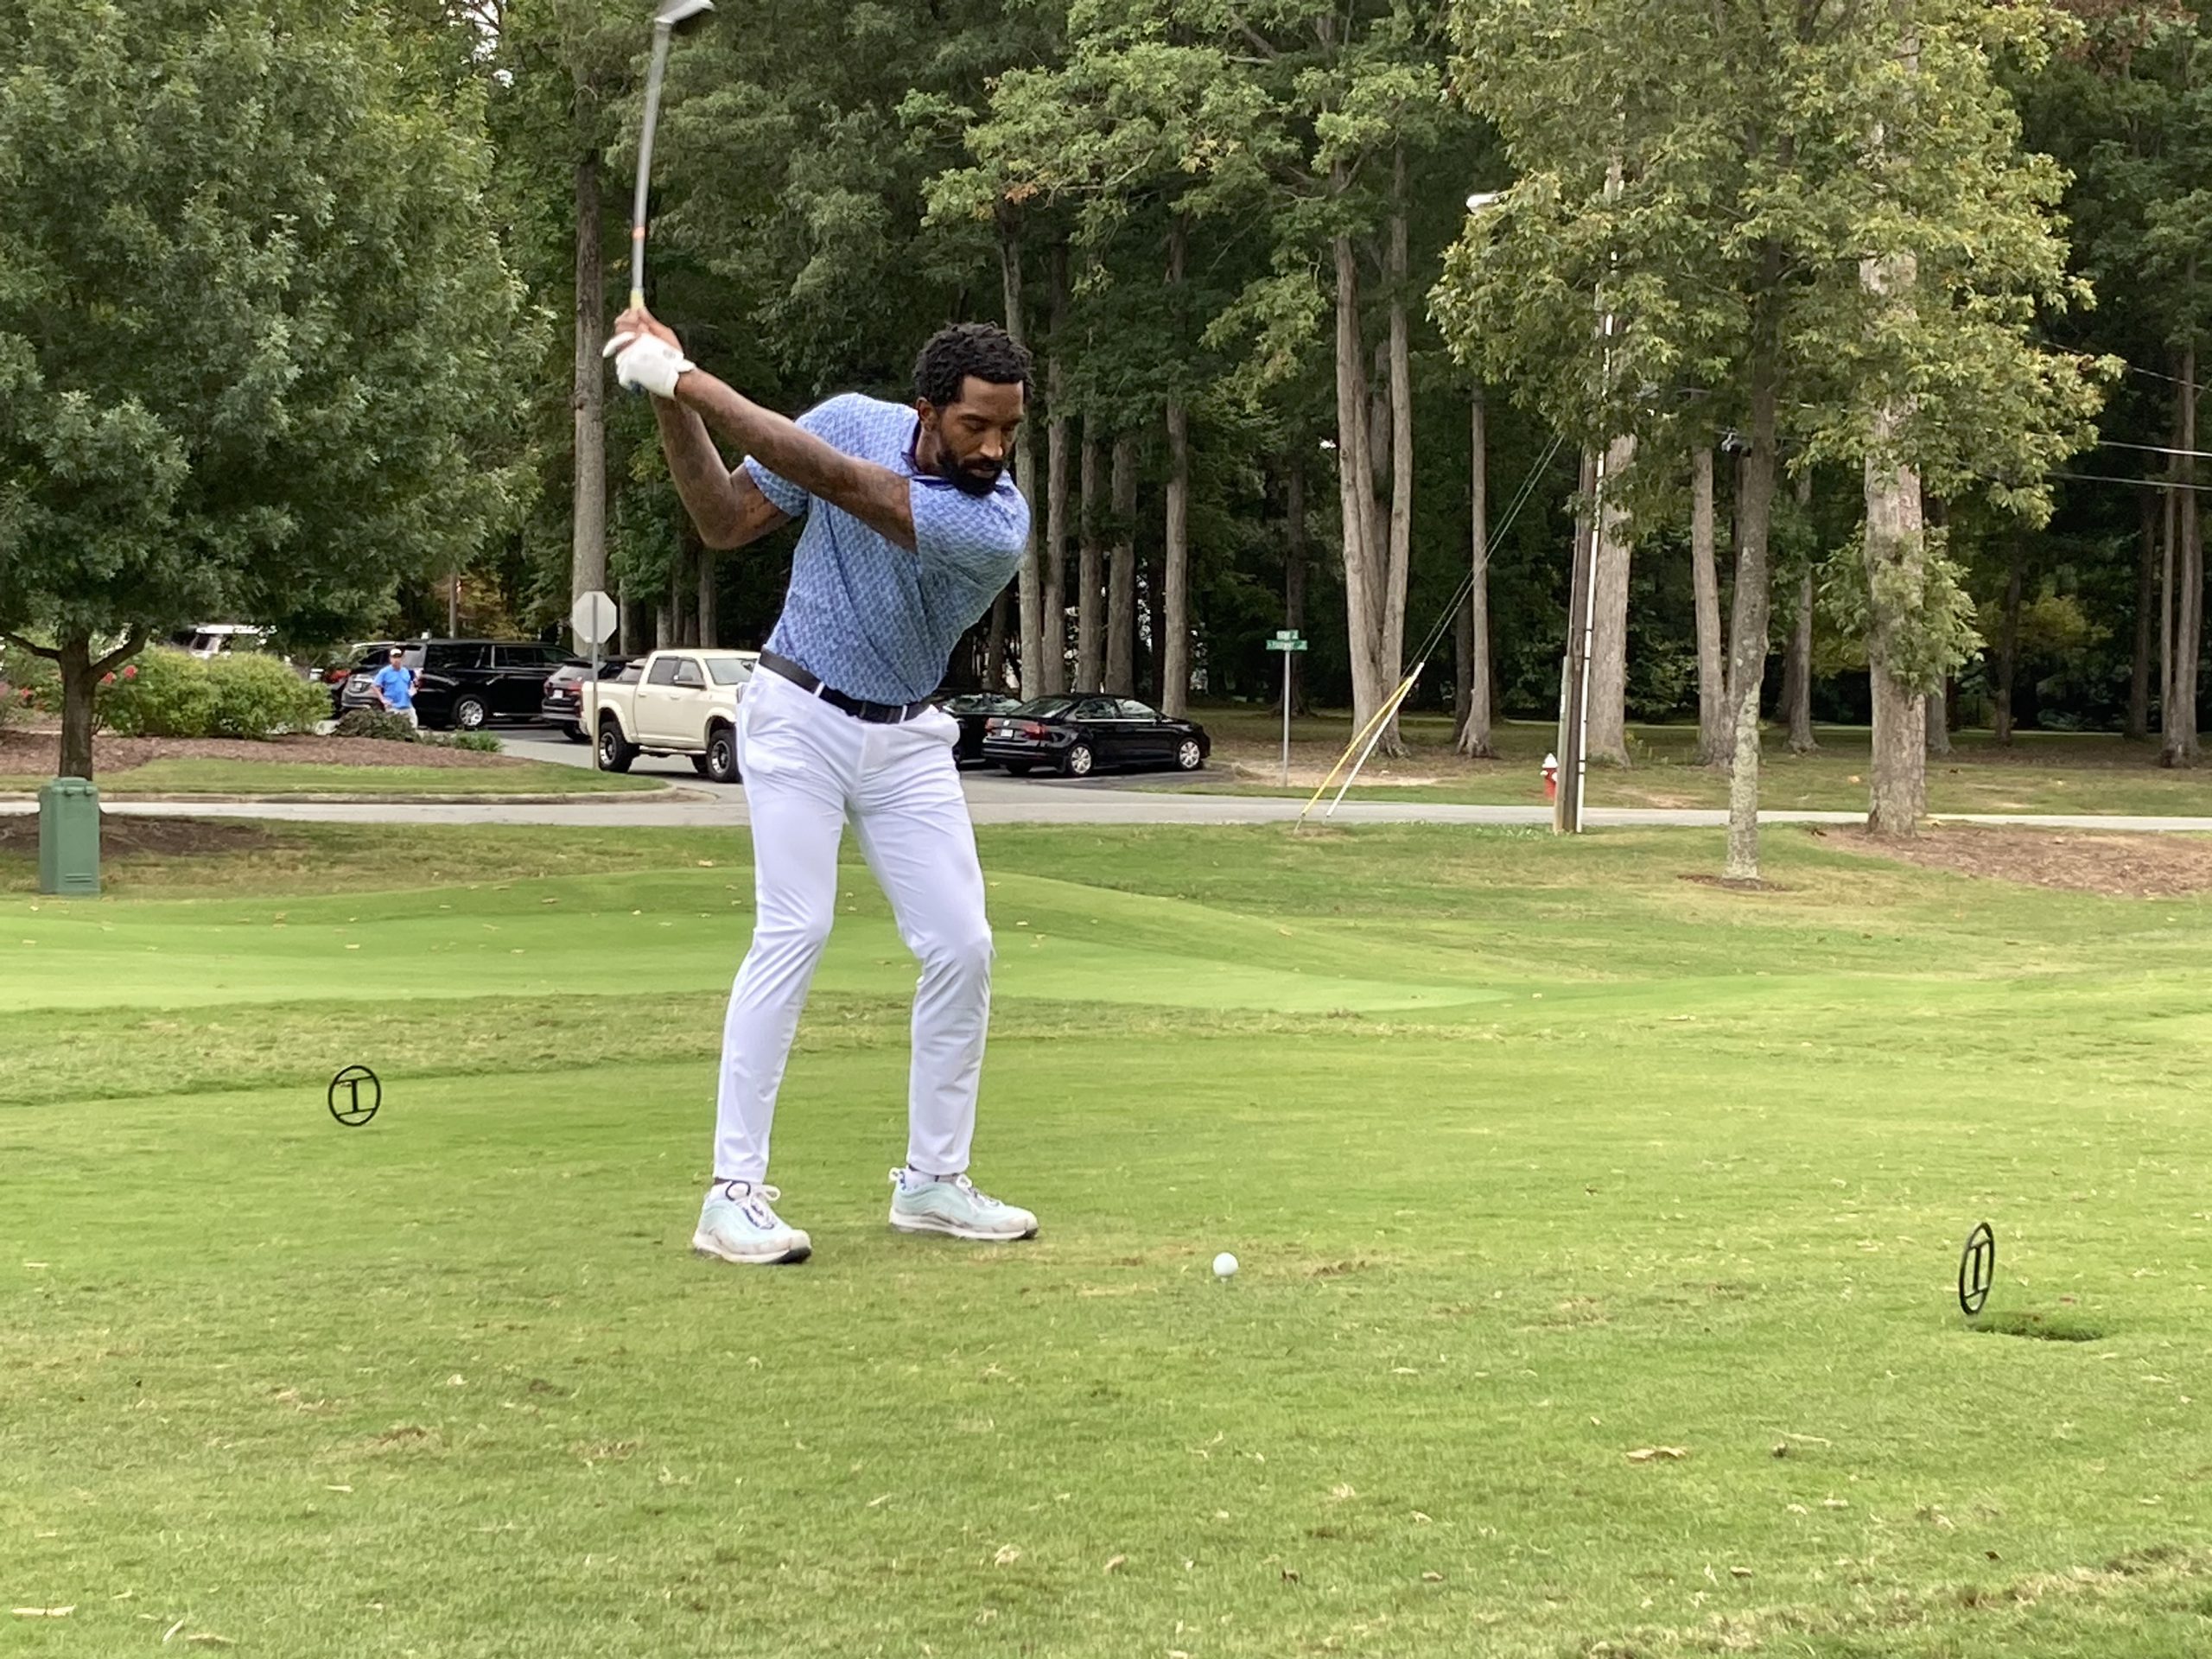 J.R. Smith swinging a golf club